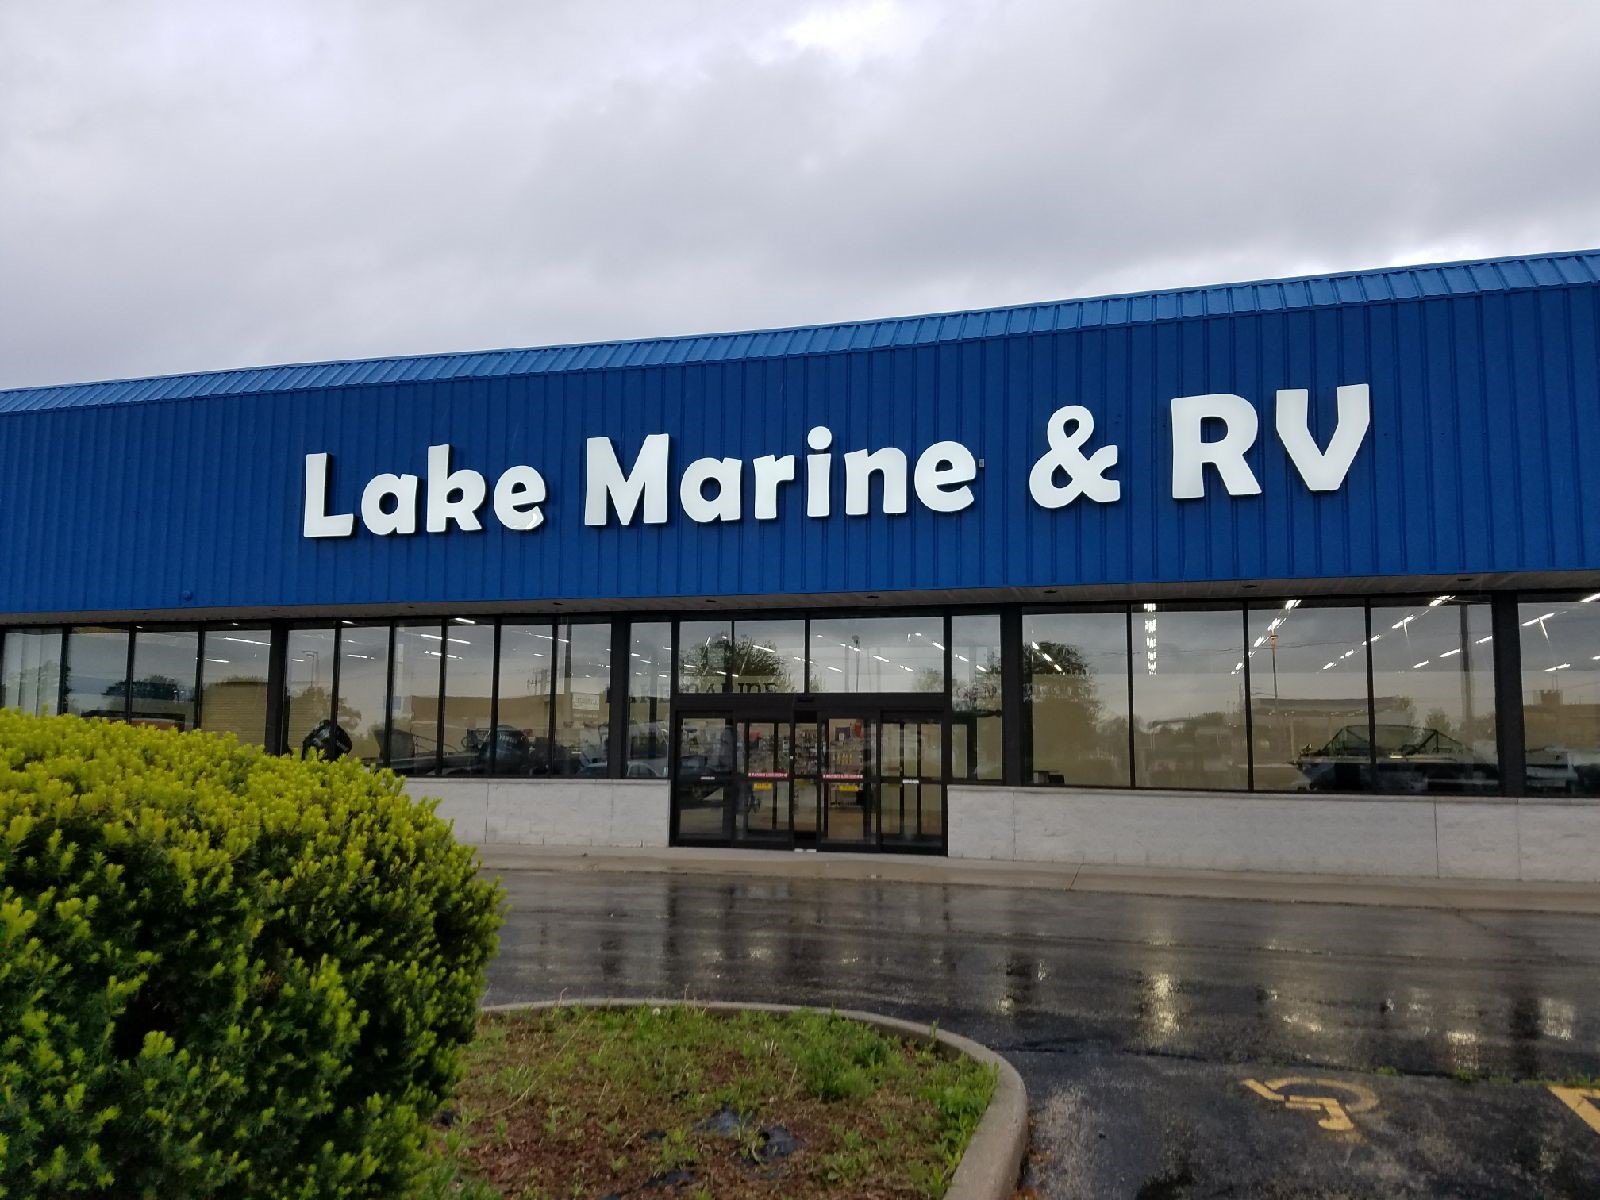 Lake Marine & RV